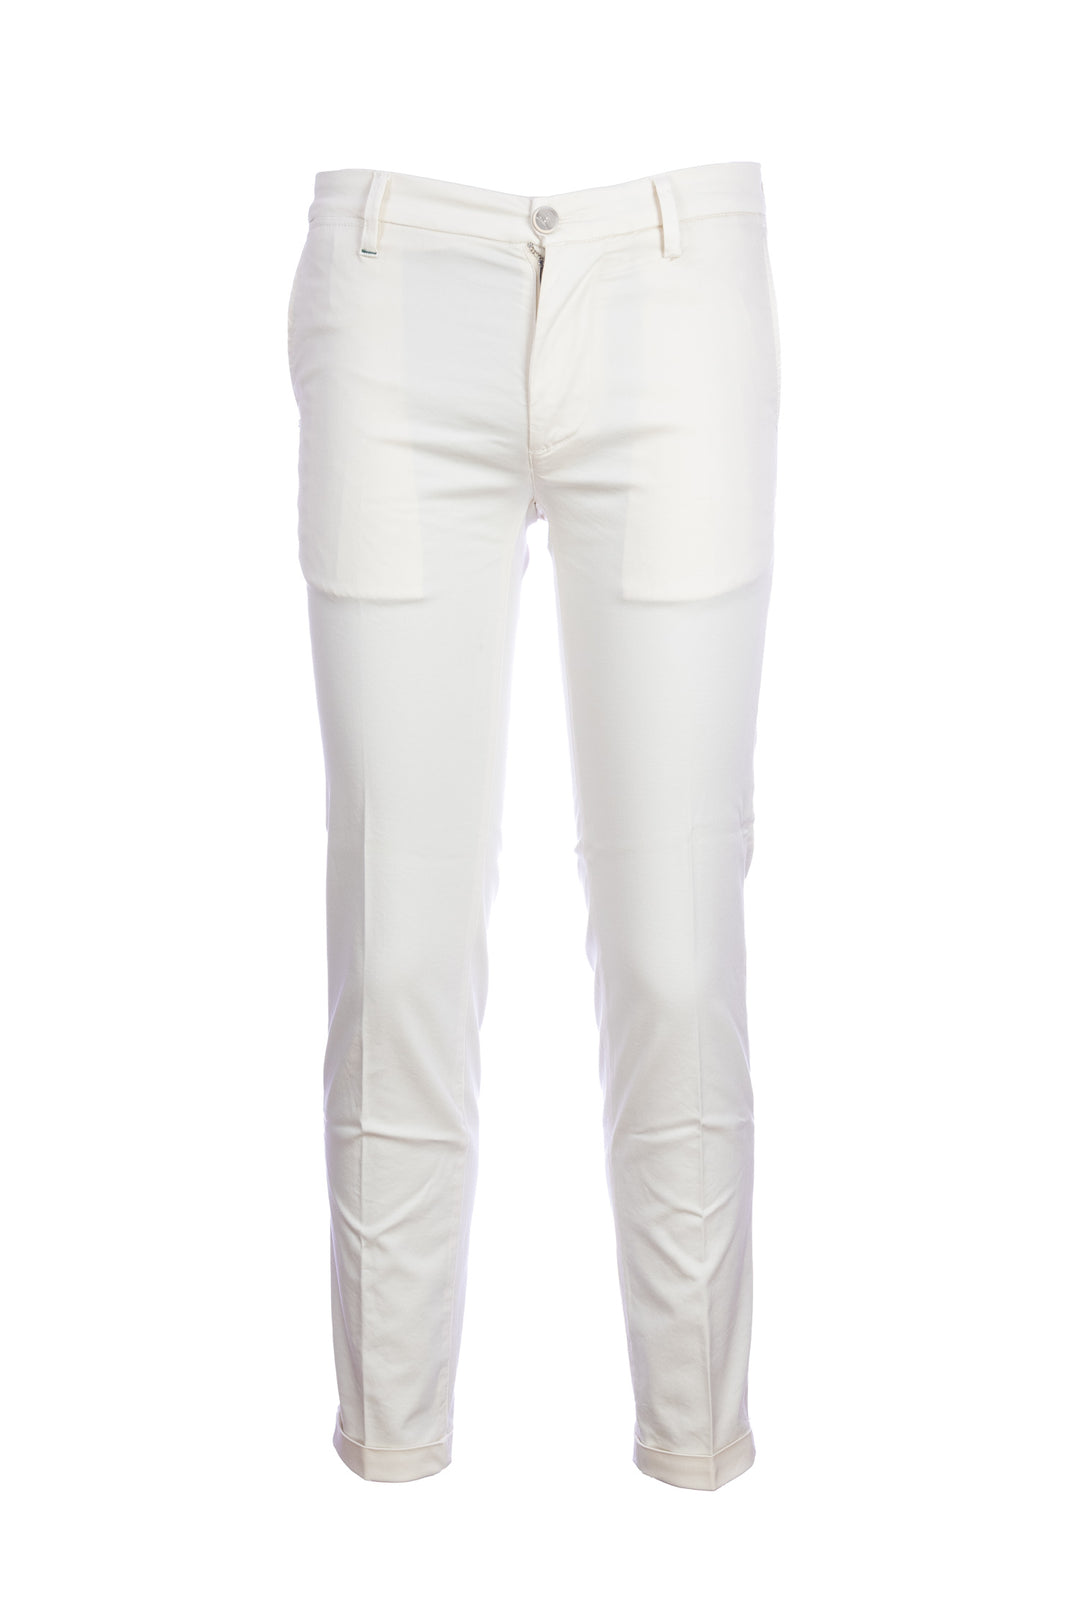 RE-HASH Pantalone chinos “MUCHA” bianco in cotone tencel con risvolto - Mancinelli 1954